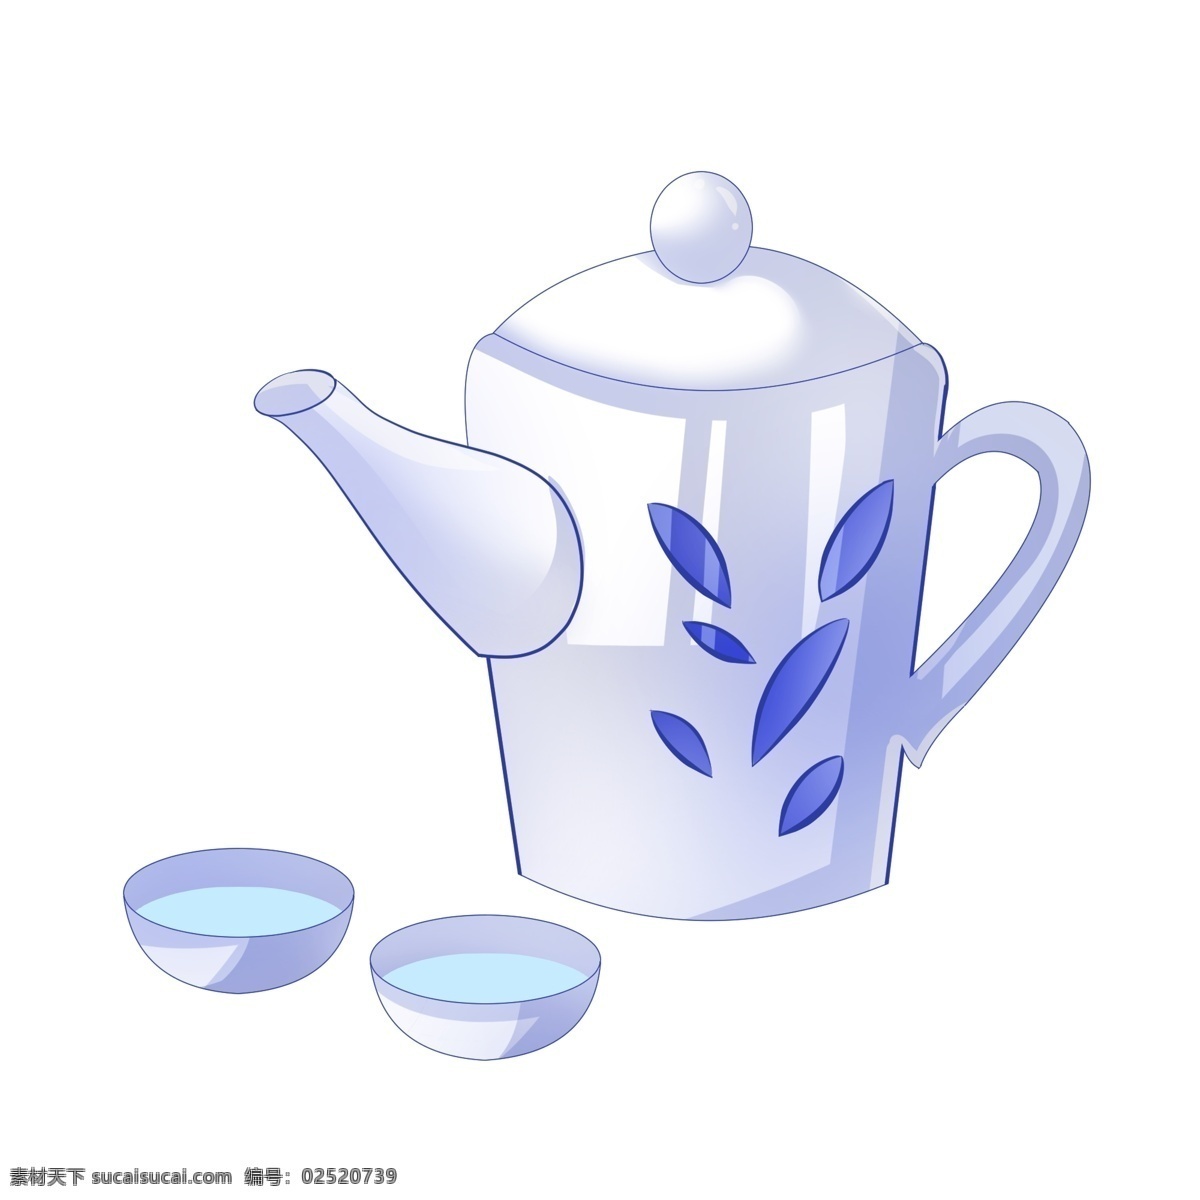 创意 茶壶 手绘 插画 创意茶壶 白色的茶壶 白色的茶杯 漂亮的茶壶 手绘茶壶 卡通茶壶 茶壶装饰